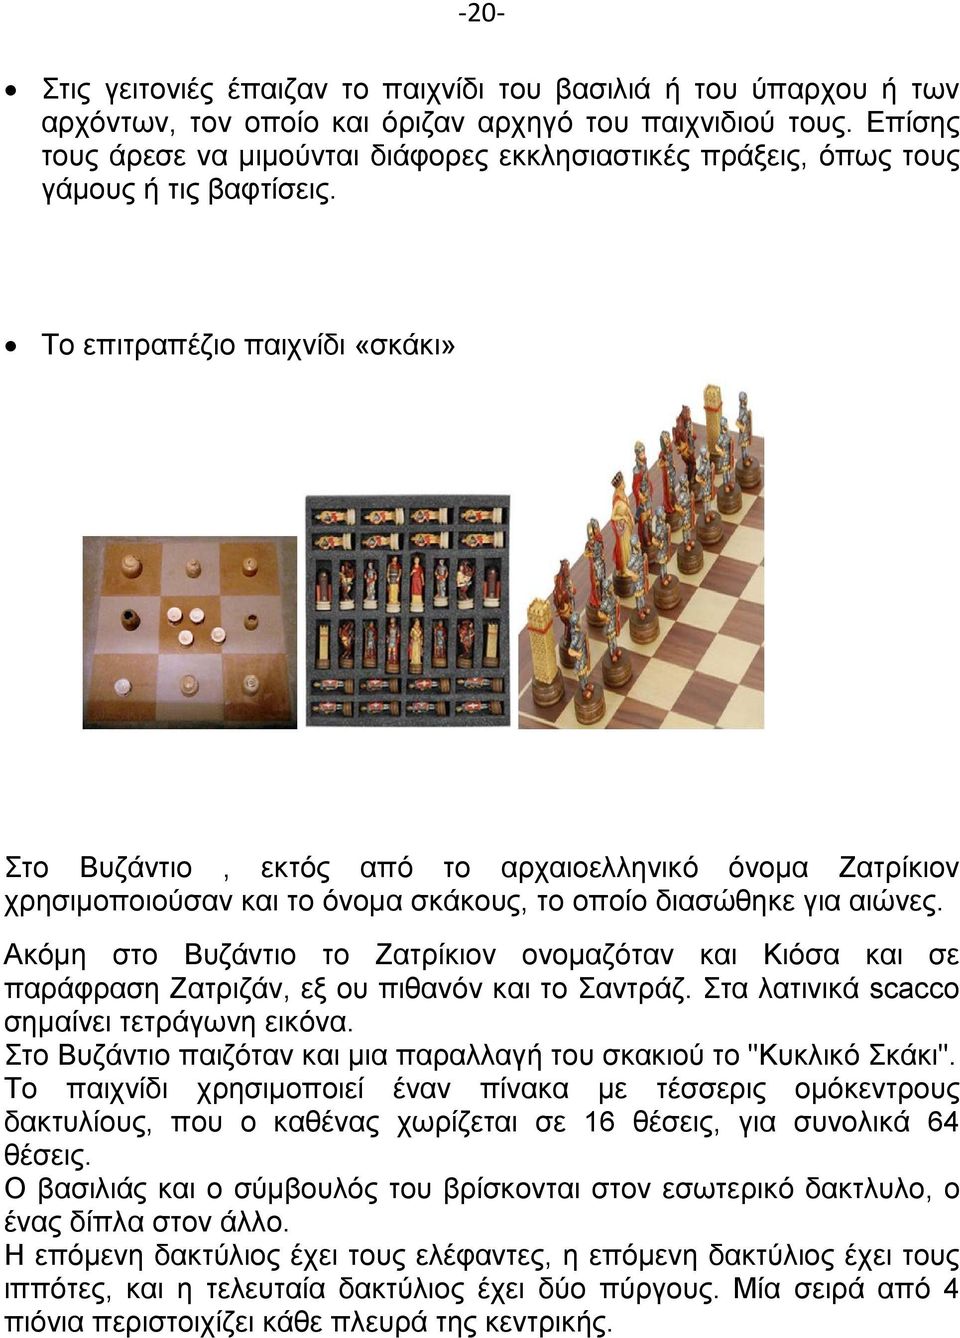 Το επιτραπέζιο παιχνίδι «σκάκι» Στο Βυζάντιο, εκτός από το αρχαιοελληνικό όνομα Ζατρίκιον χρησιμοποιούσαν και το όνομα σκάκους, το οποίο διασώθηκε για αιώνες.